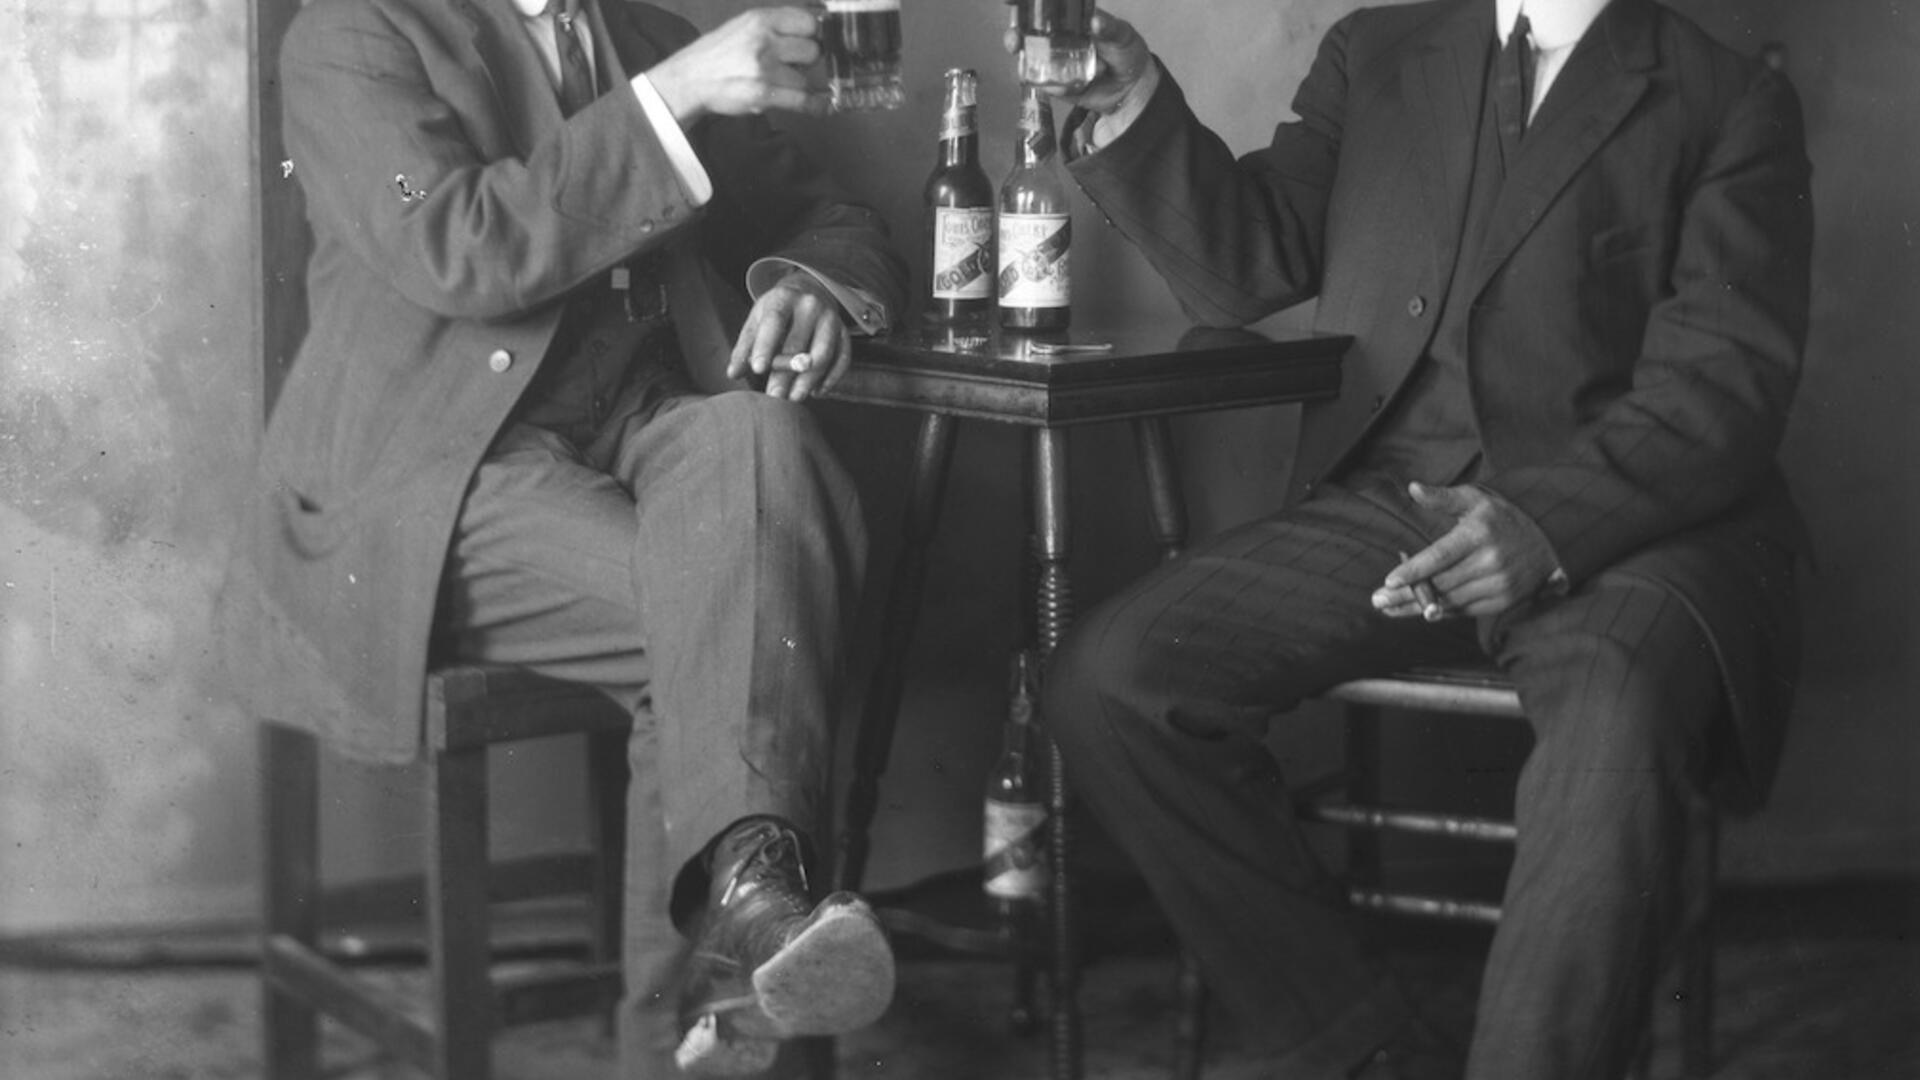 Portrait_of_Two_men_drinking_Louis_Obert_Gold_Beer.jpg